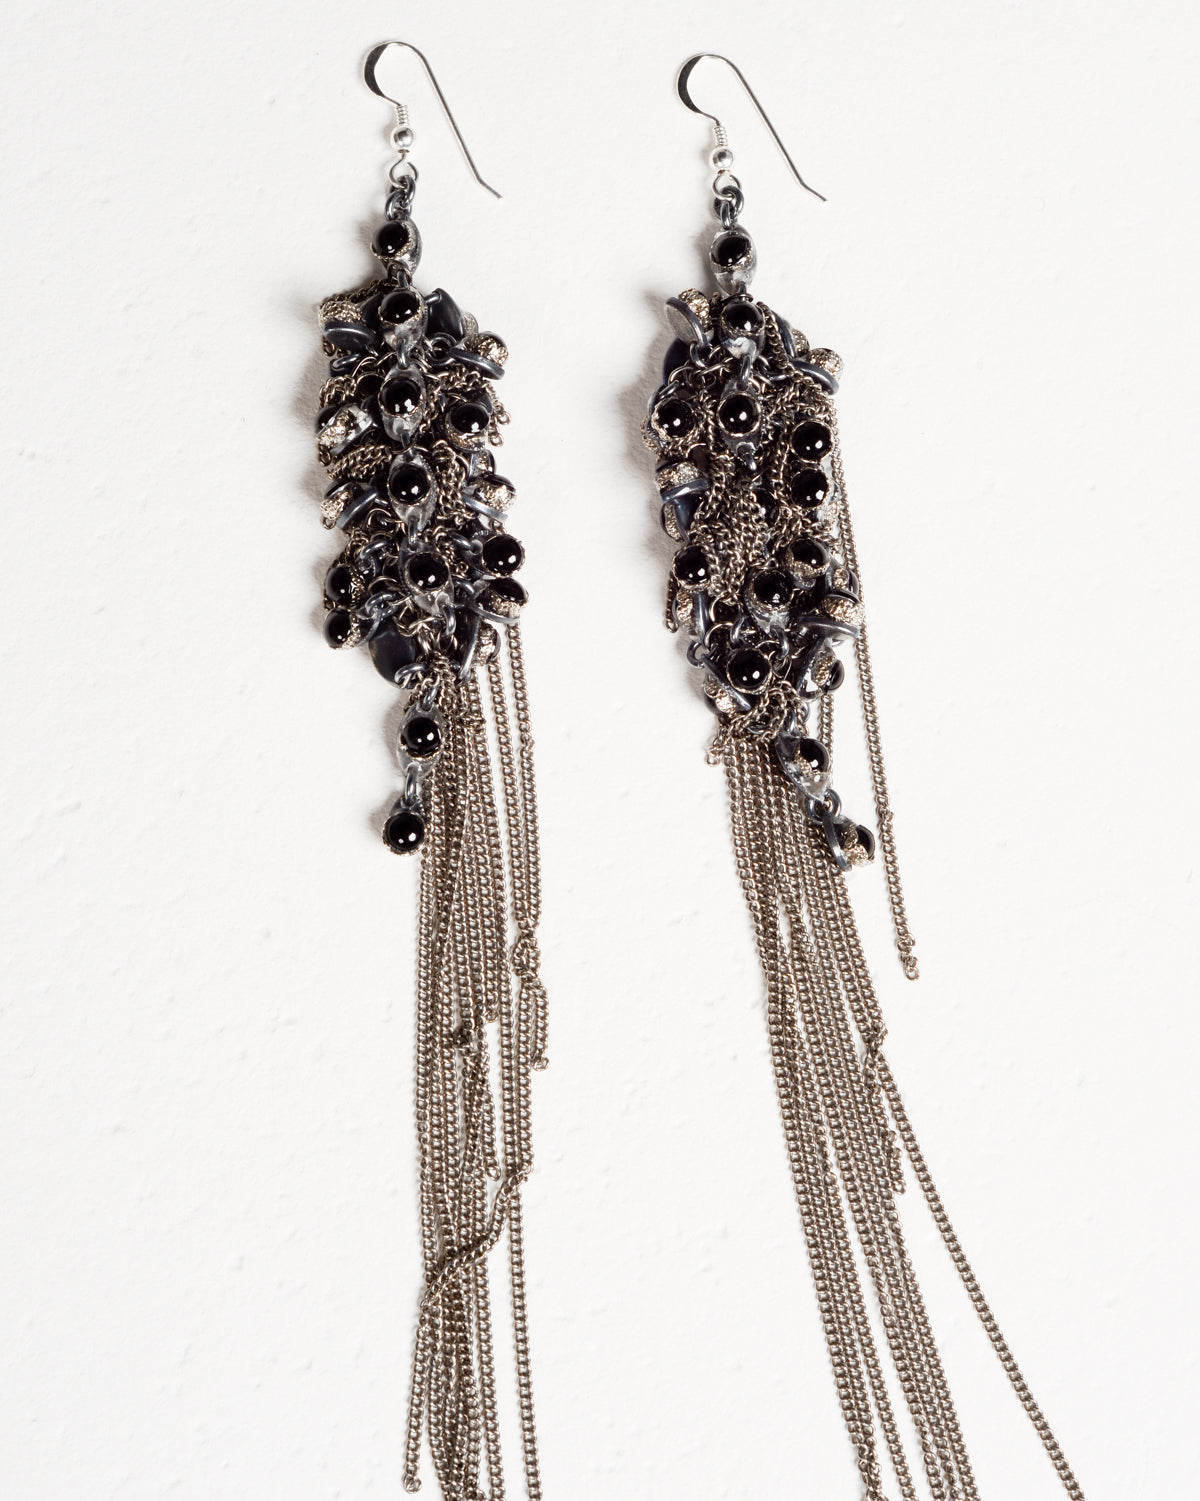 Glass Beads in Resin Steel Chain Earrings